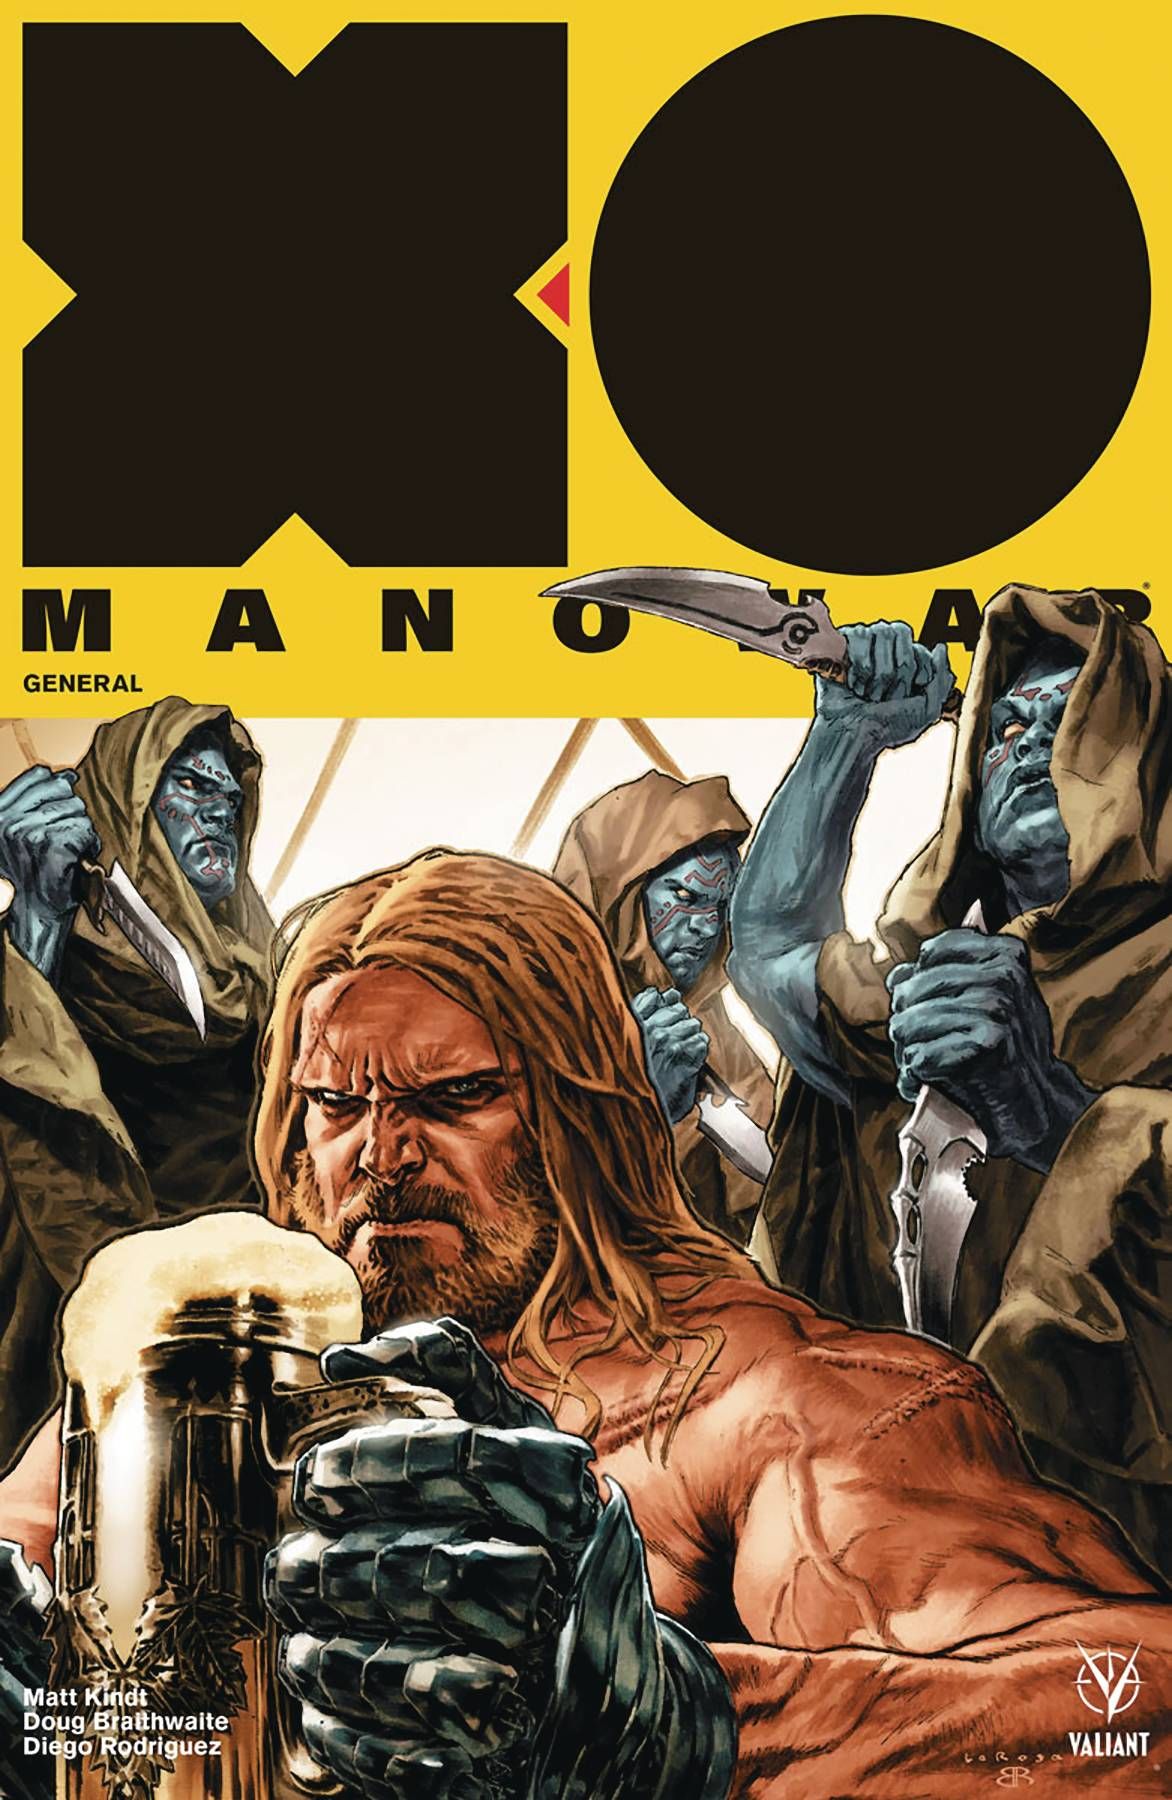 X-O Manowar #6 Comic